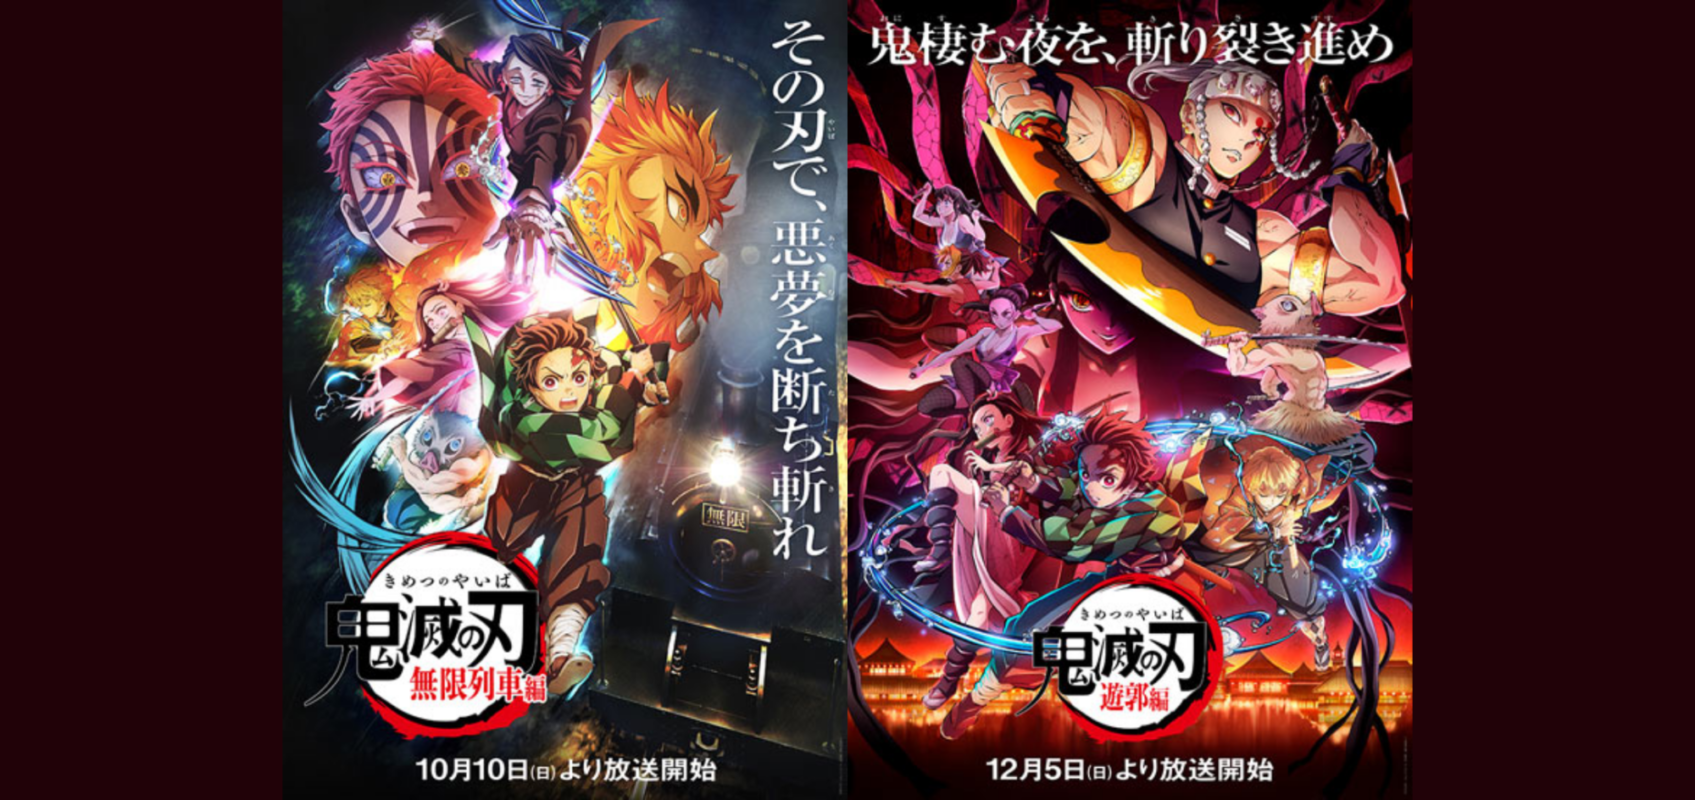 Akan tayang 2 season terbaru The Demon Slayer (Kimetsu no Yaiba) “Mugen Train” (Mugen Resha-hen) dan (Yukaku-hen)